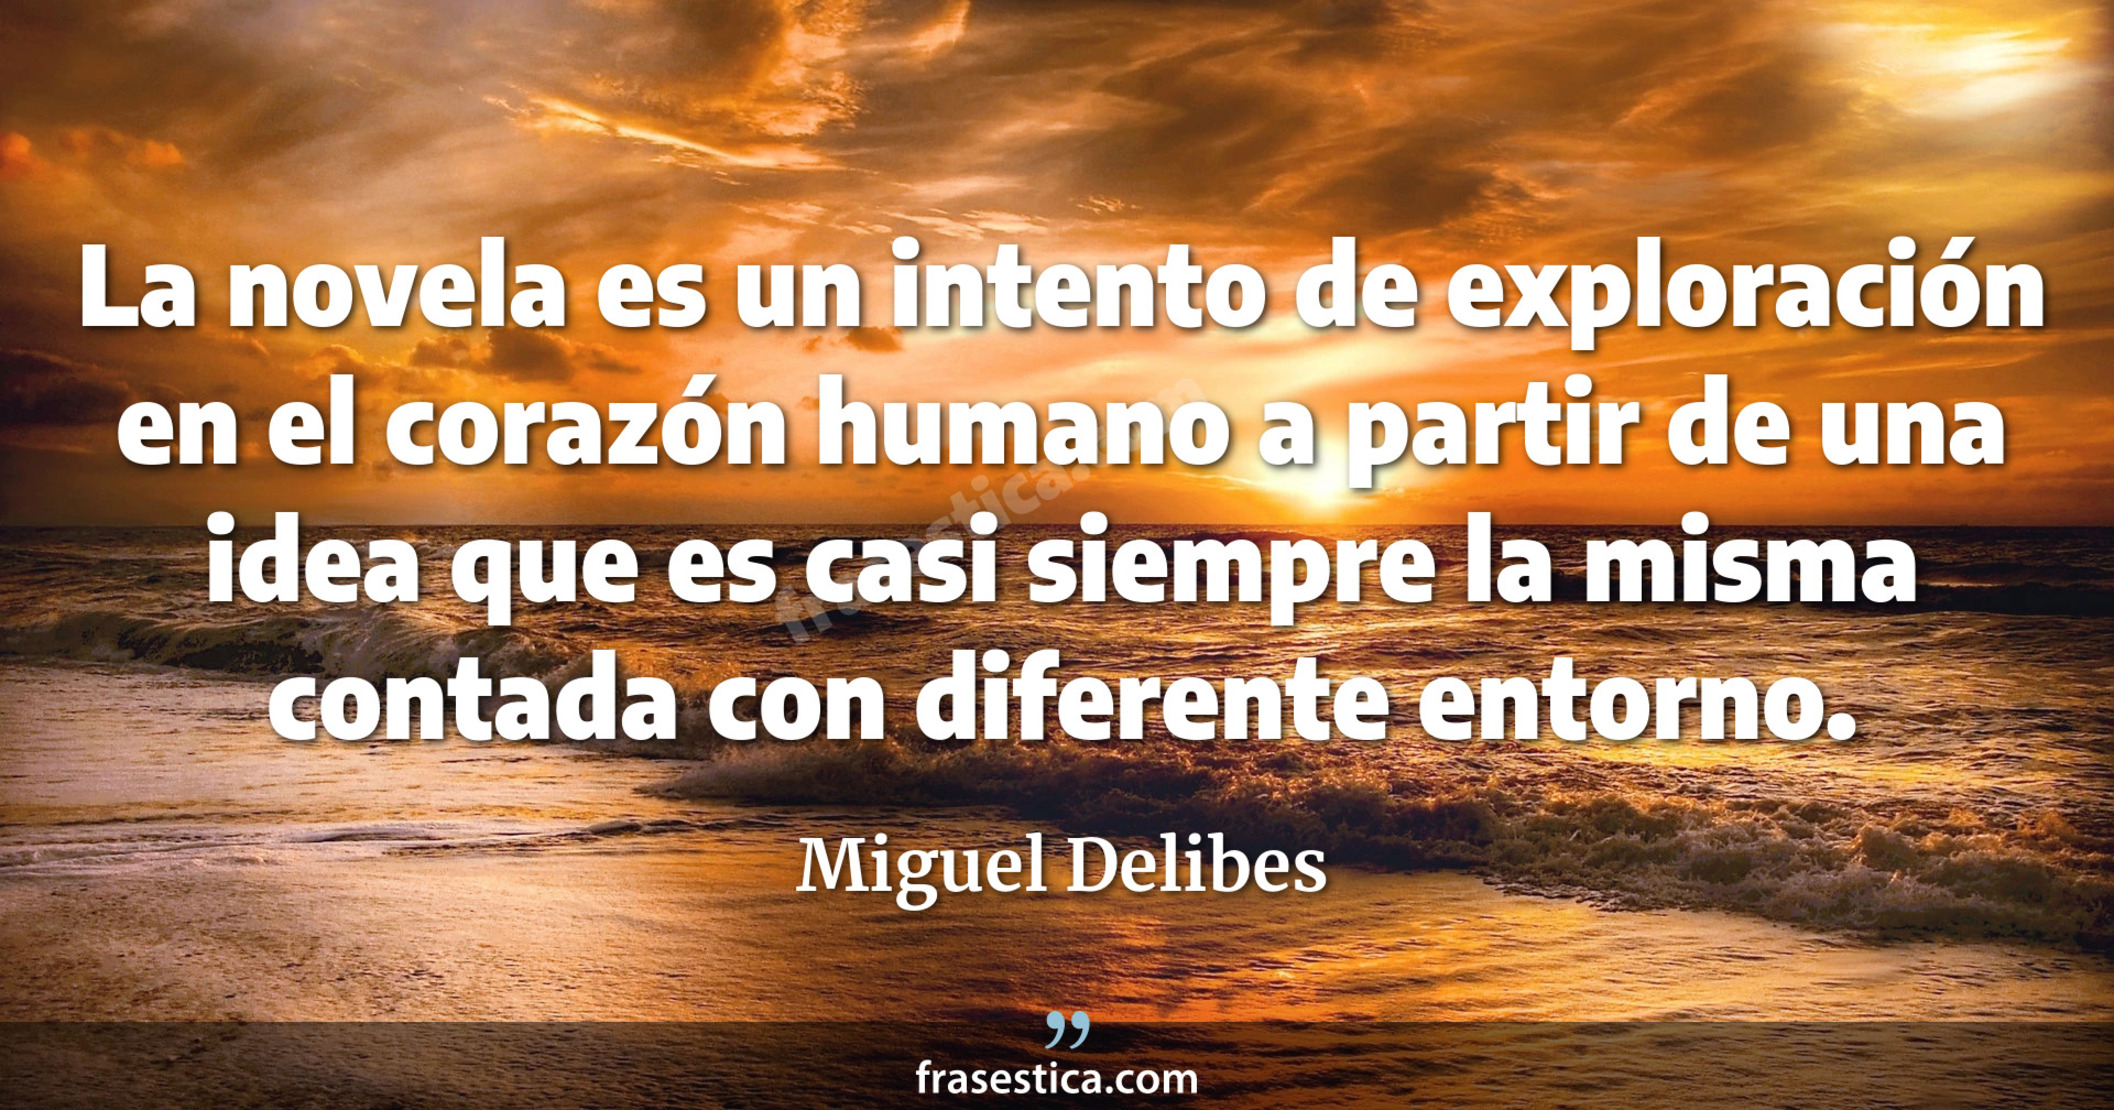 La novela es un intento de exploración en el corazón humano a partir de una idea que es casi siempre la misma contada con diferente entorno. - Miguel Delibes